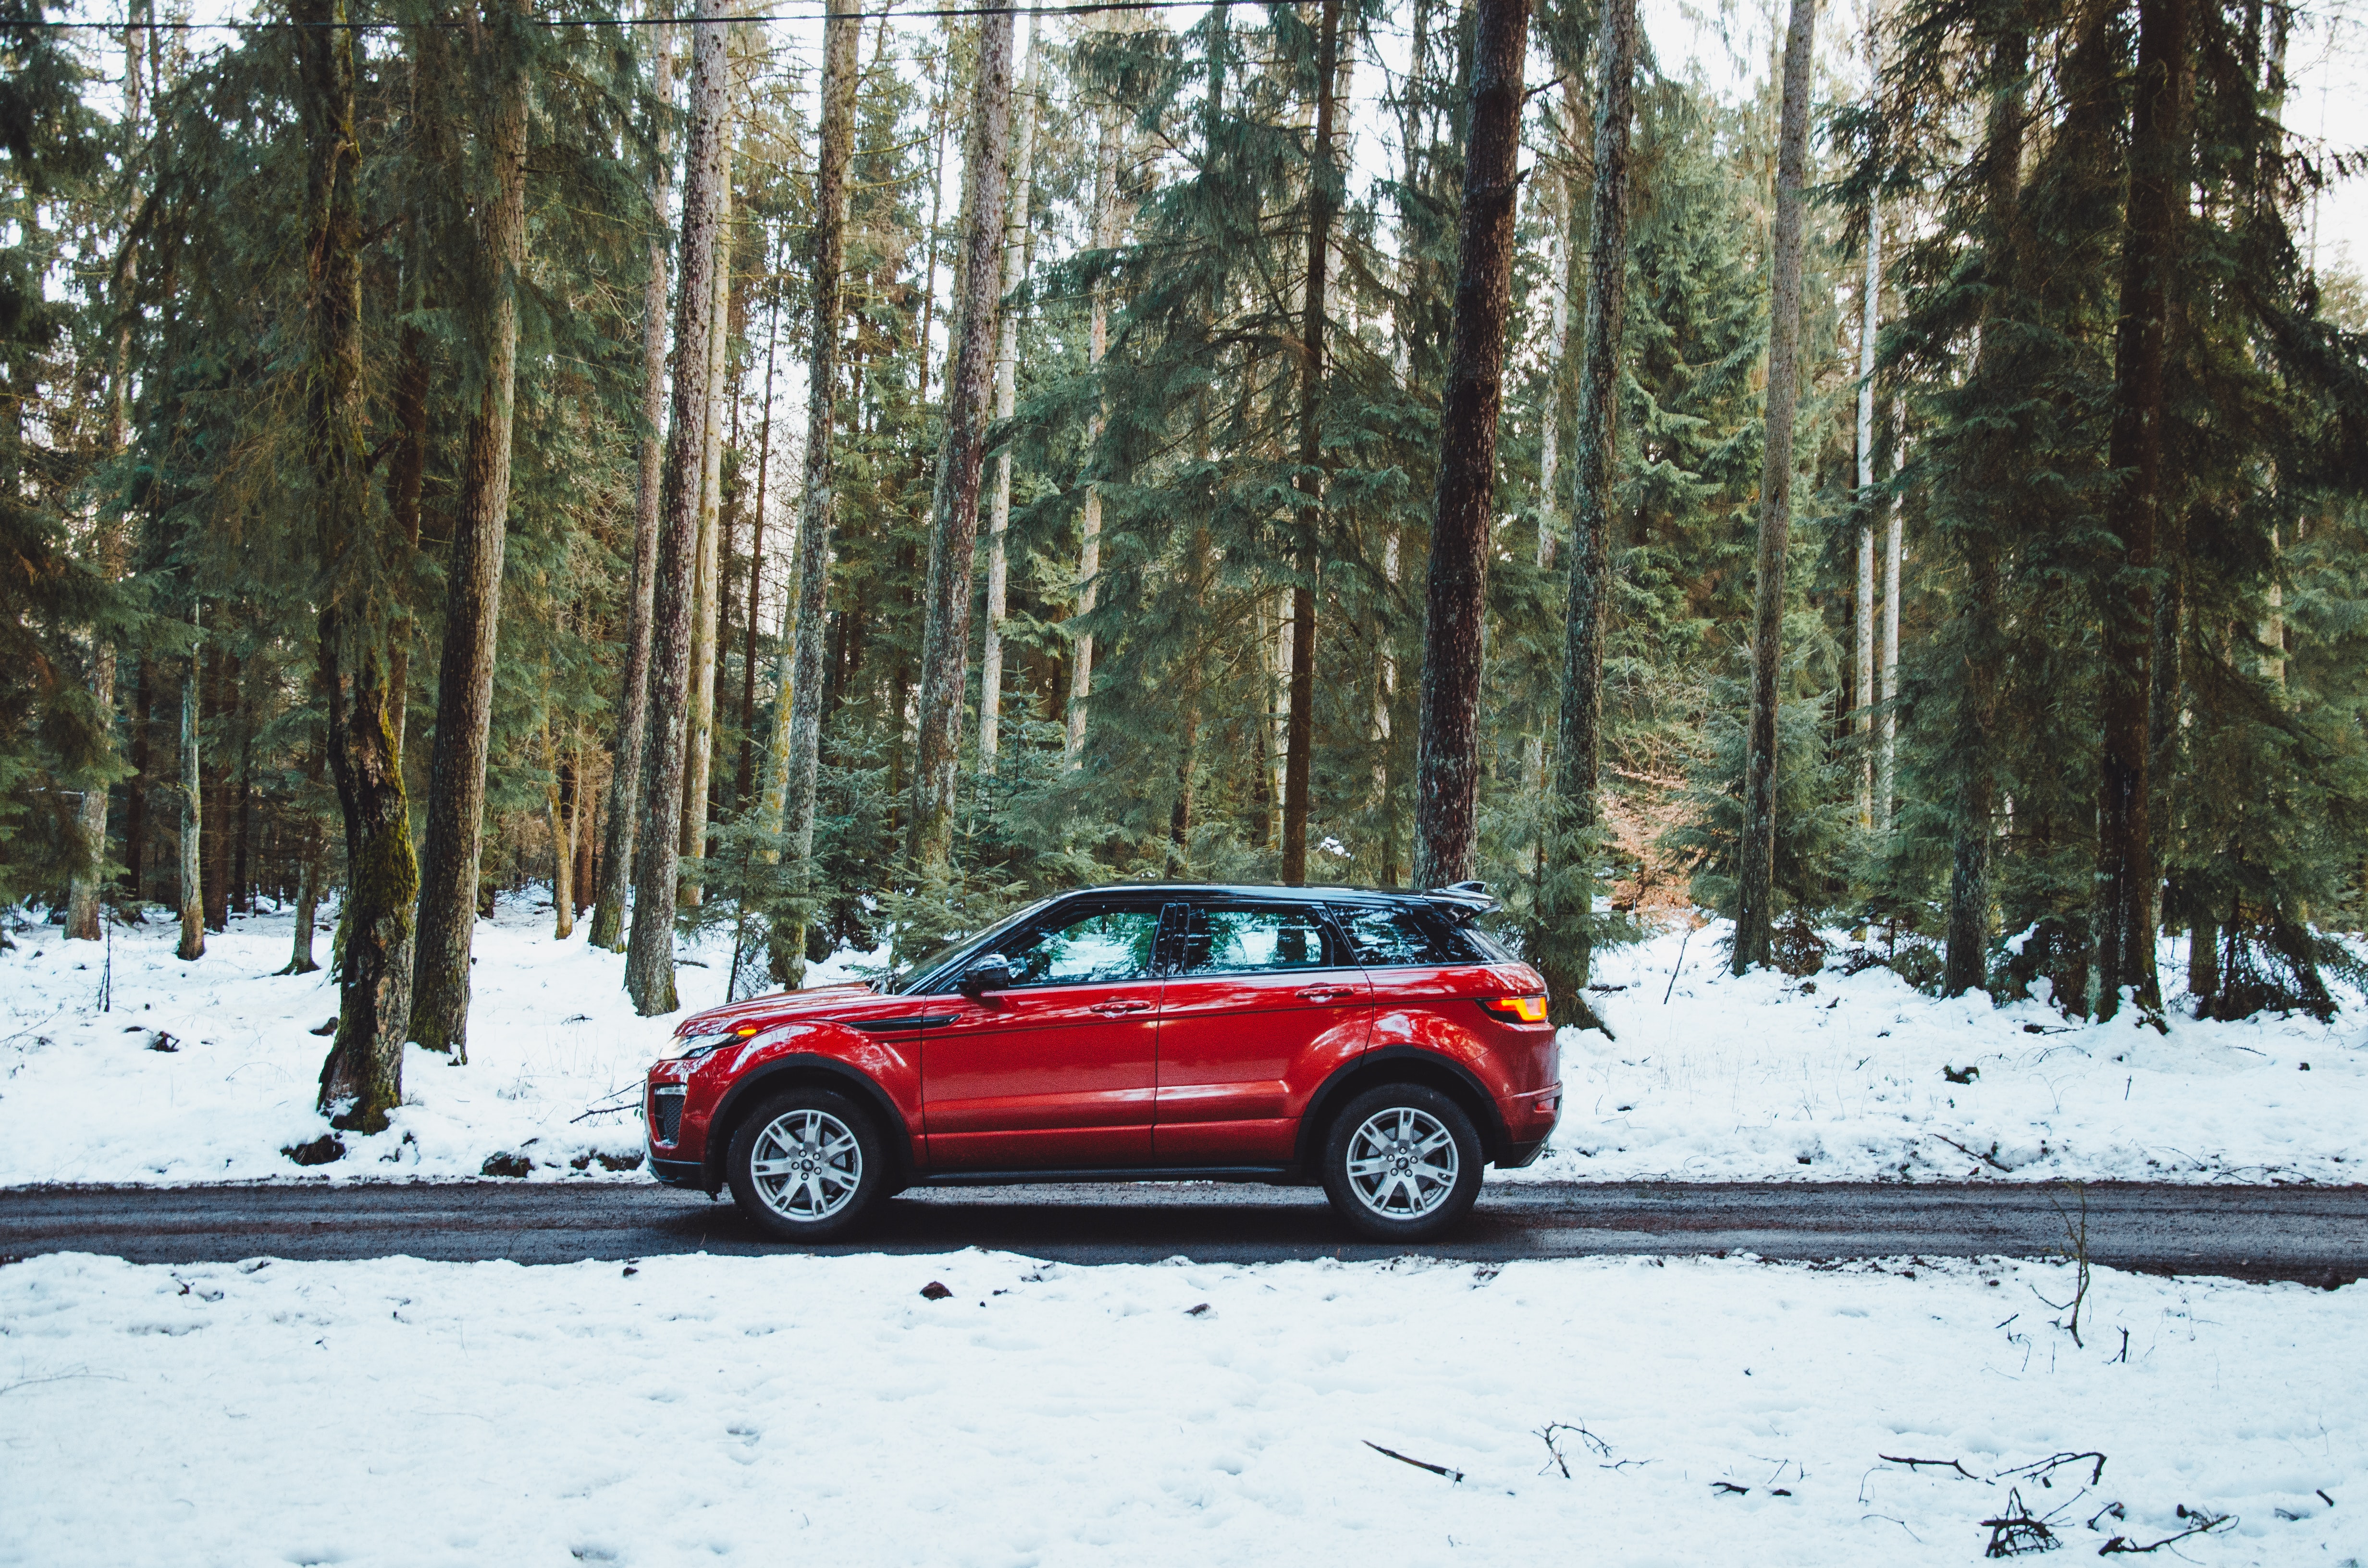 149654 免費下載壁紙 汽车, 红色, 路, 森林, 红色的, 车, 侧面图, 从一个视图到另一个, 雪覆盖, 白雪覆盖 屏保和圖片